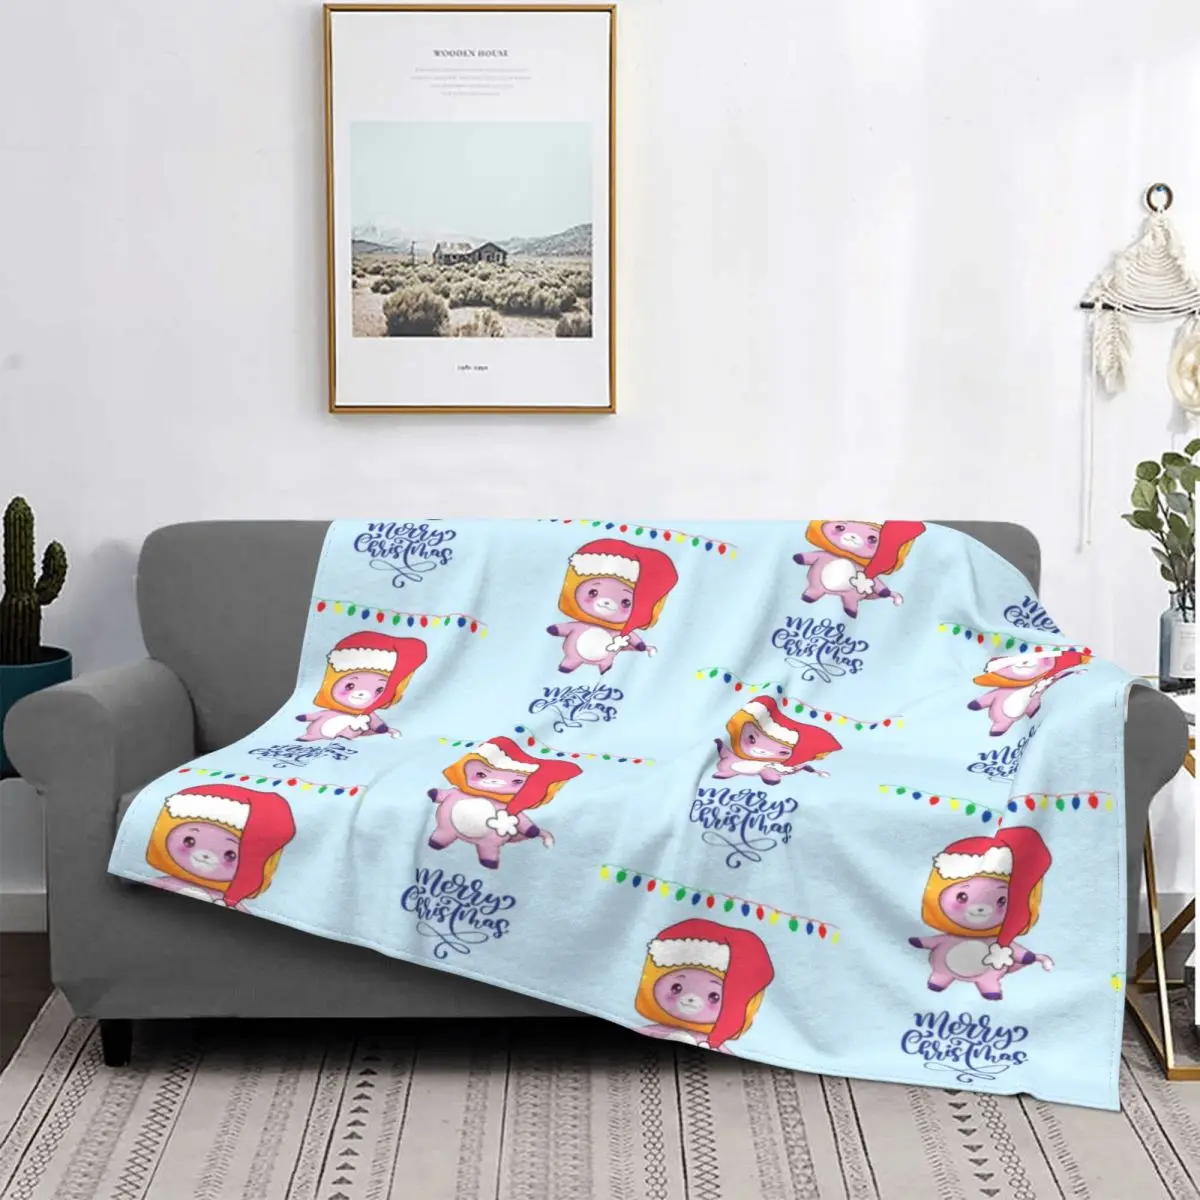 

Boxy And Foxy Lankybox одеяла фланелевые Текстильный декор Дышащие Ультра-мягкие Пледы для кровати путешествия одеяло